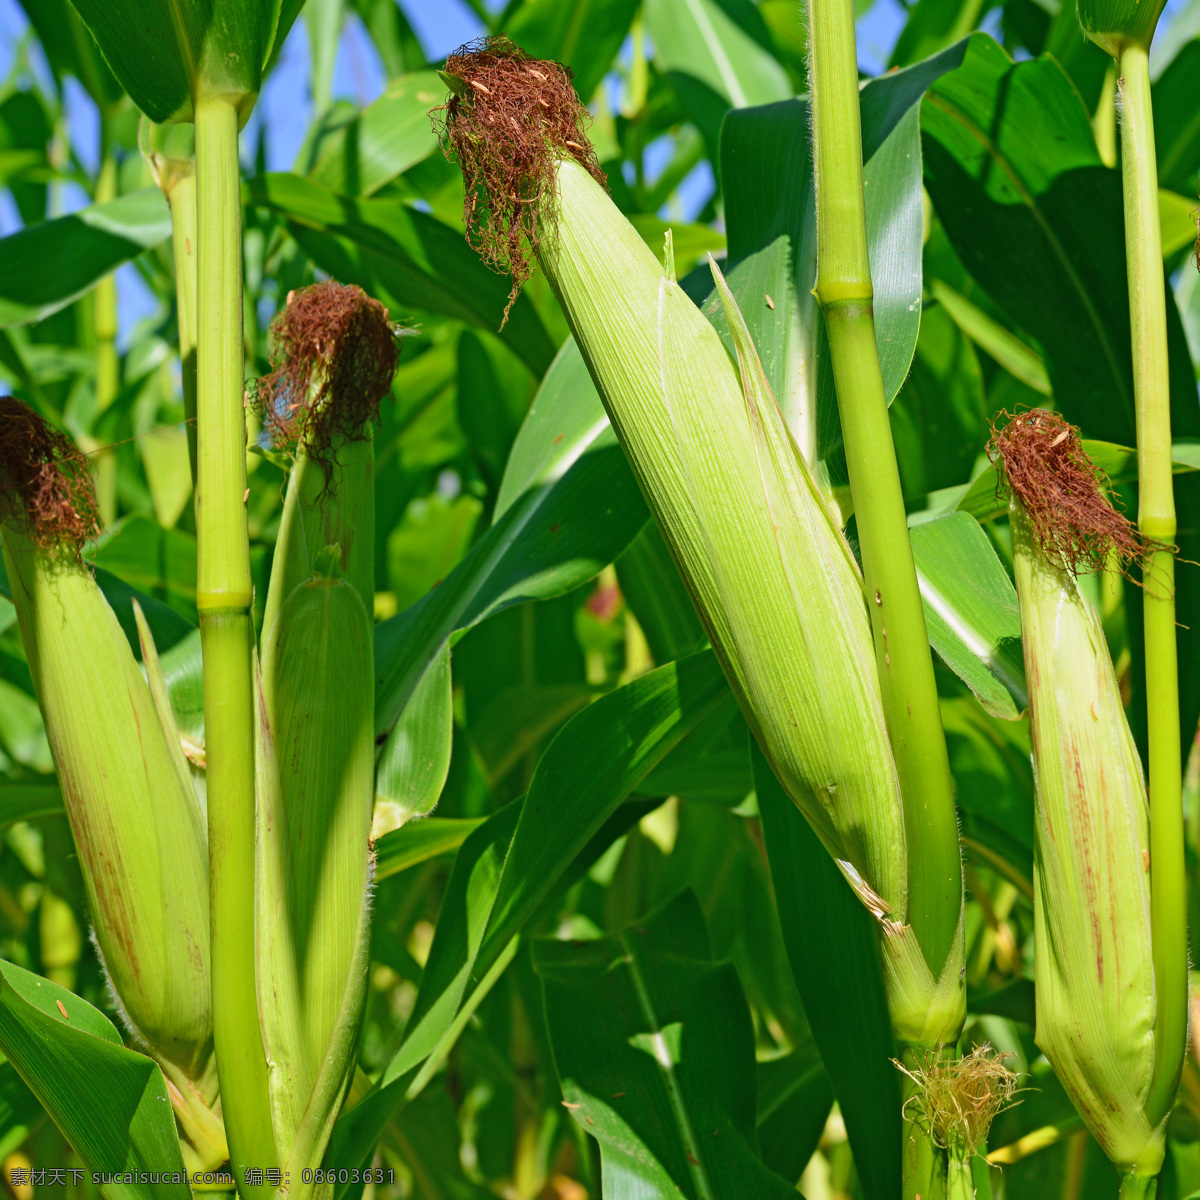 玉米地 摄影图片 玉米棒子 玉米 苞谷 新鲜玉米 玉米摄影 其他类别 生活百科 绿色